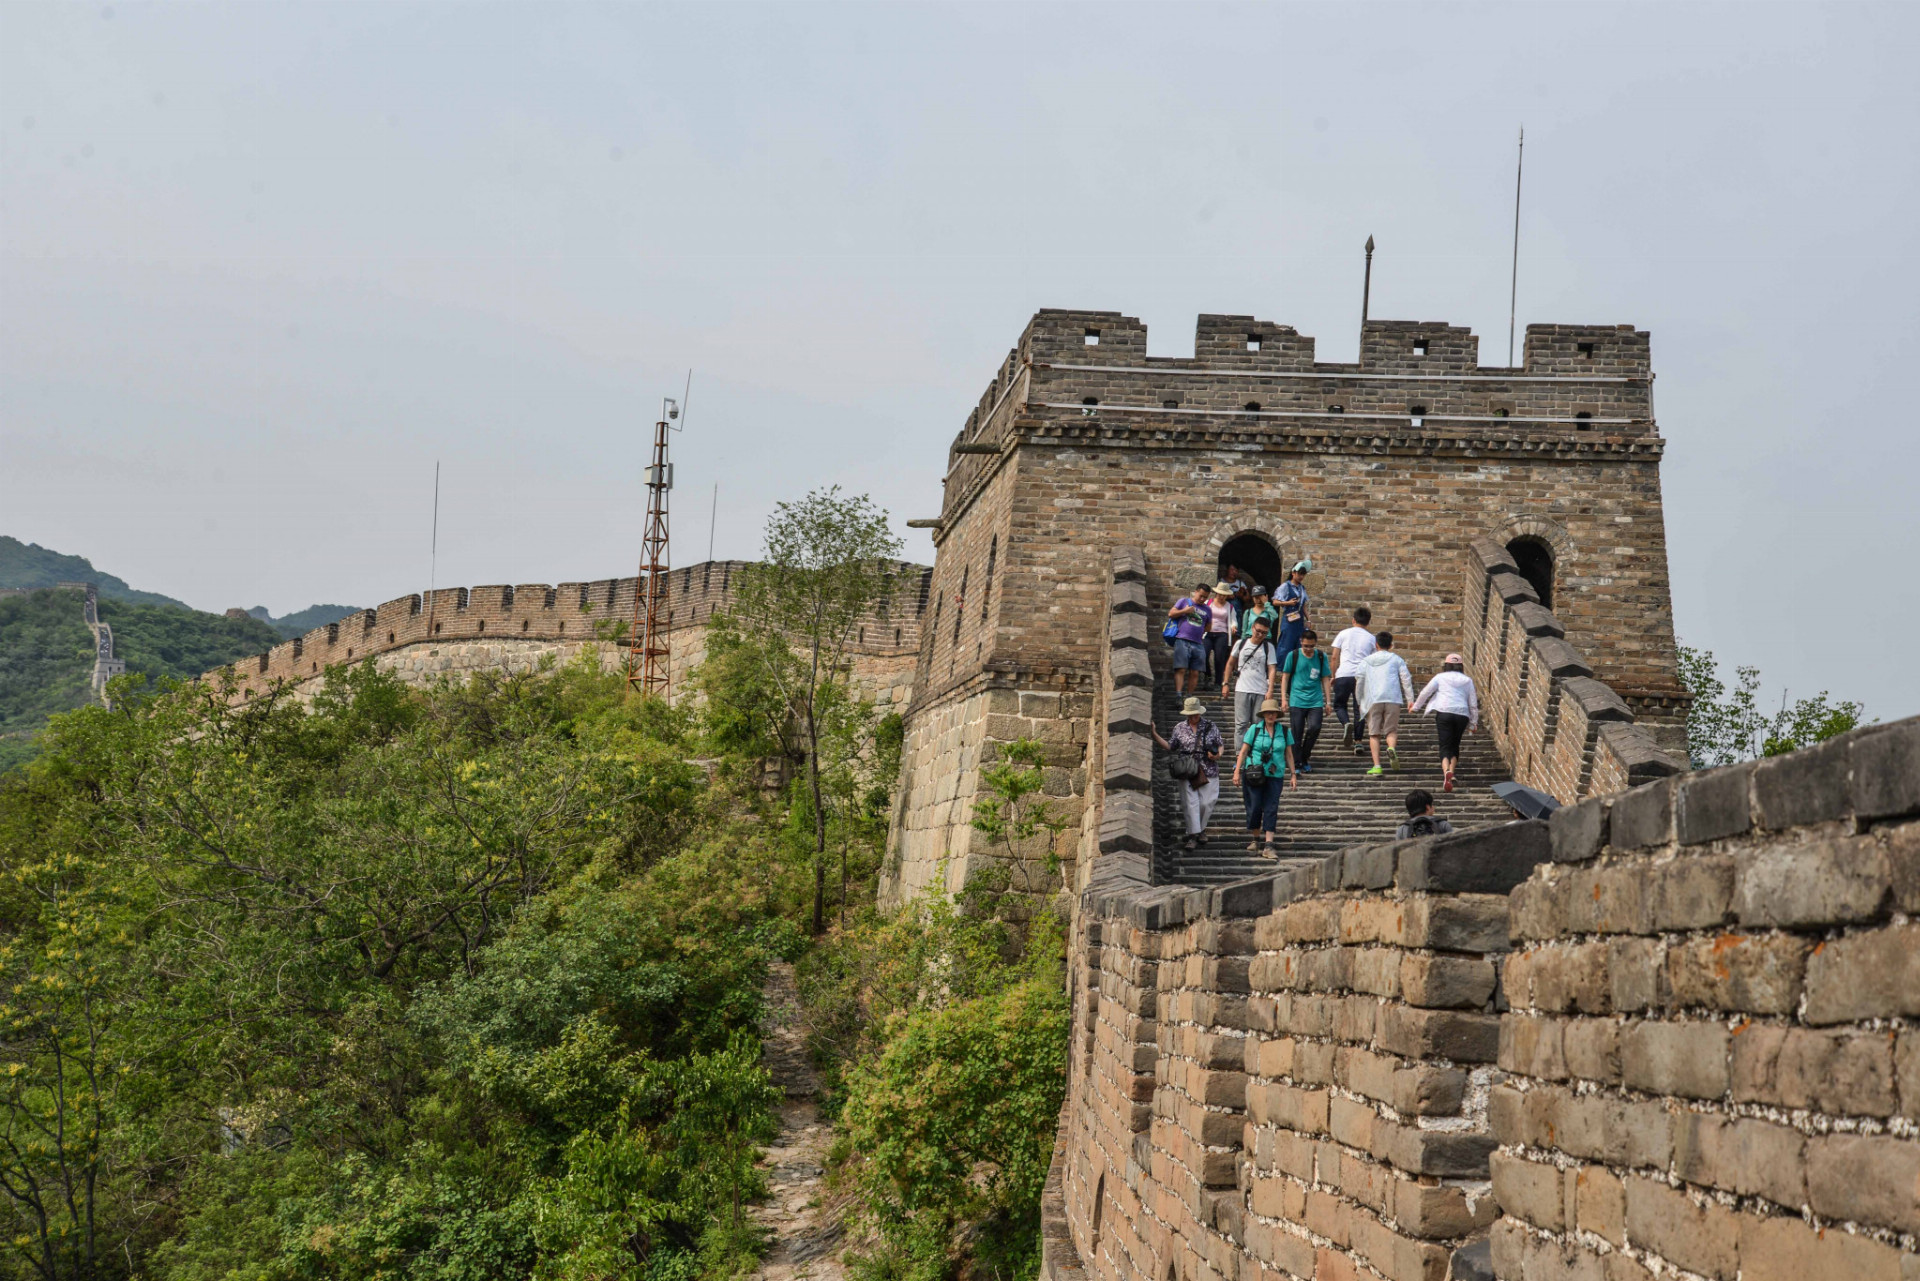 Ročne toto miesto navštívia desiatky miliónov turistov. Je to čínsky národný symbol, stavba stará približne 1800 rokov. Dĺžka múru sa odhaduje na 10-20 tisíc kilometrov. Konštrukcia sa tiahne cez horské priechody, hrebene. Najviac zachovaná časť prechádza  od juhovýchodnej provincie Liaoning k severozápadnej provincii Gansu. 